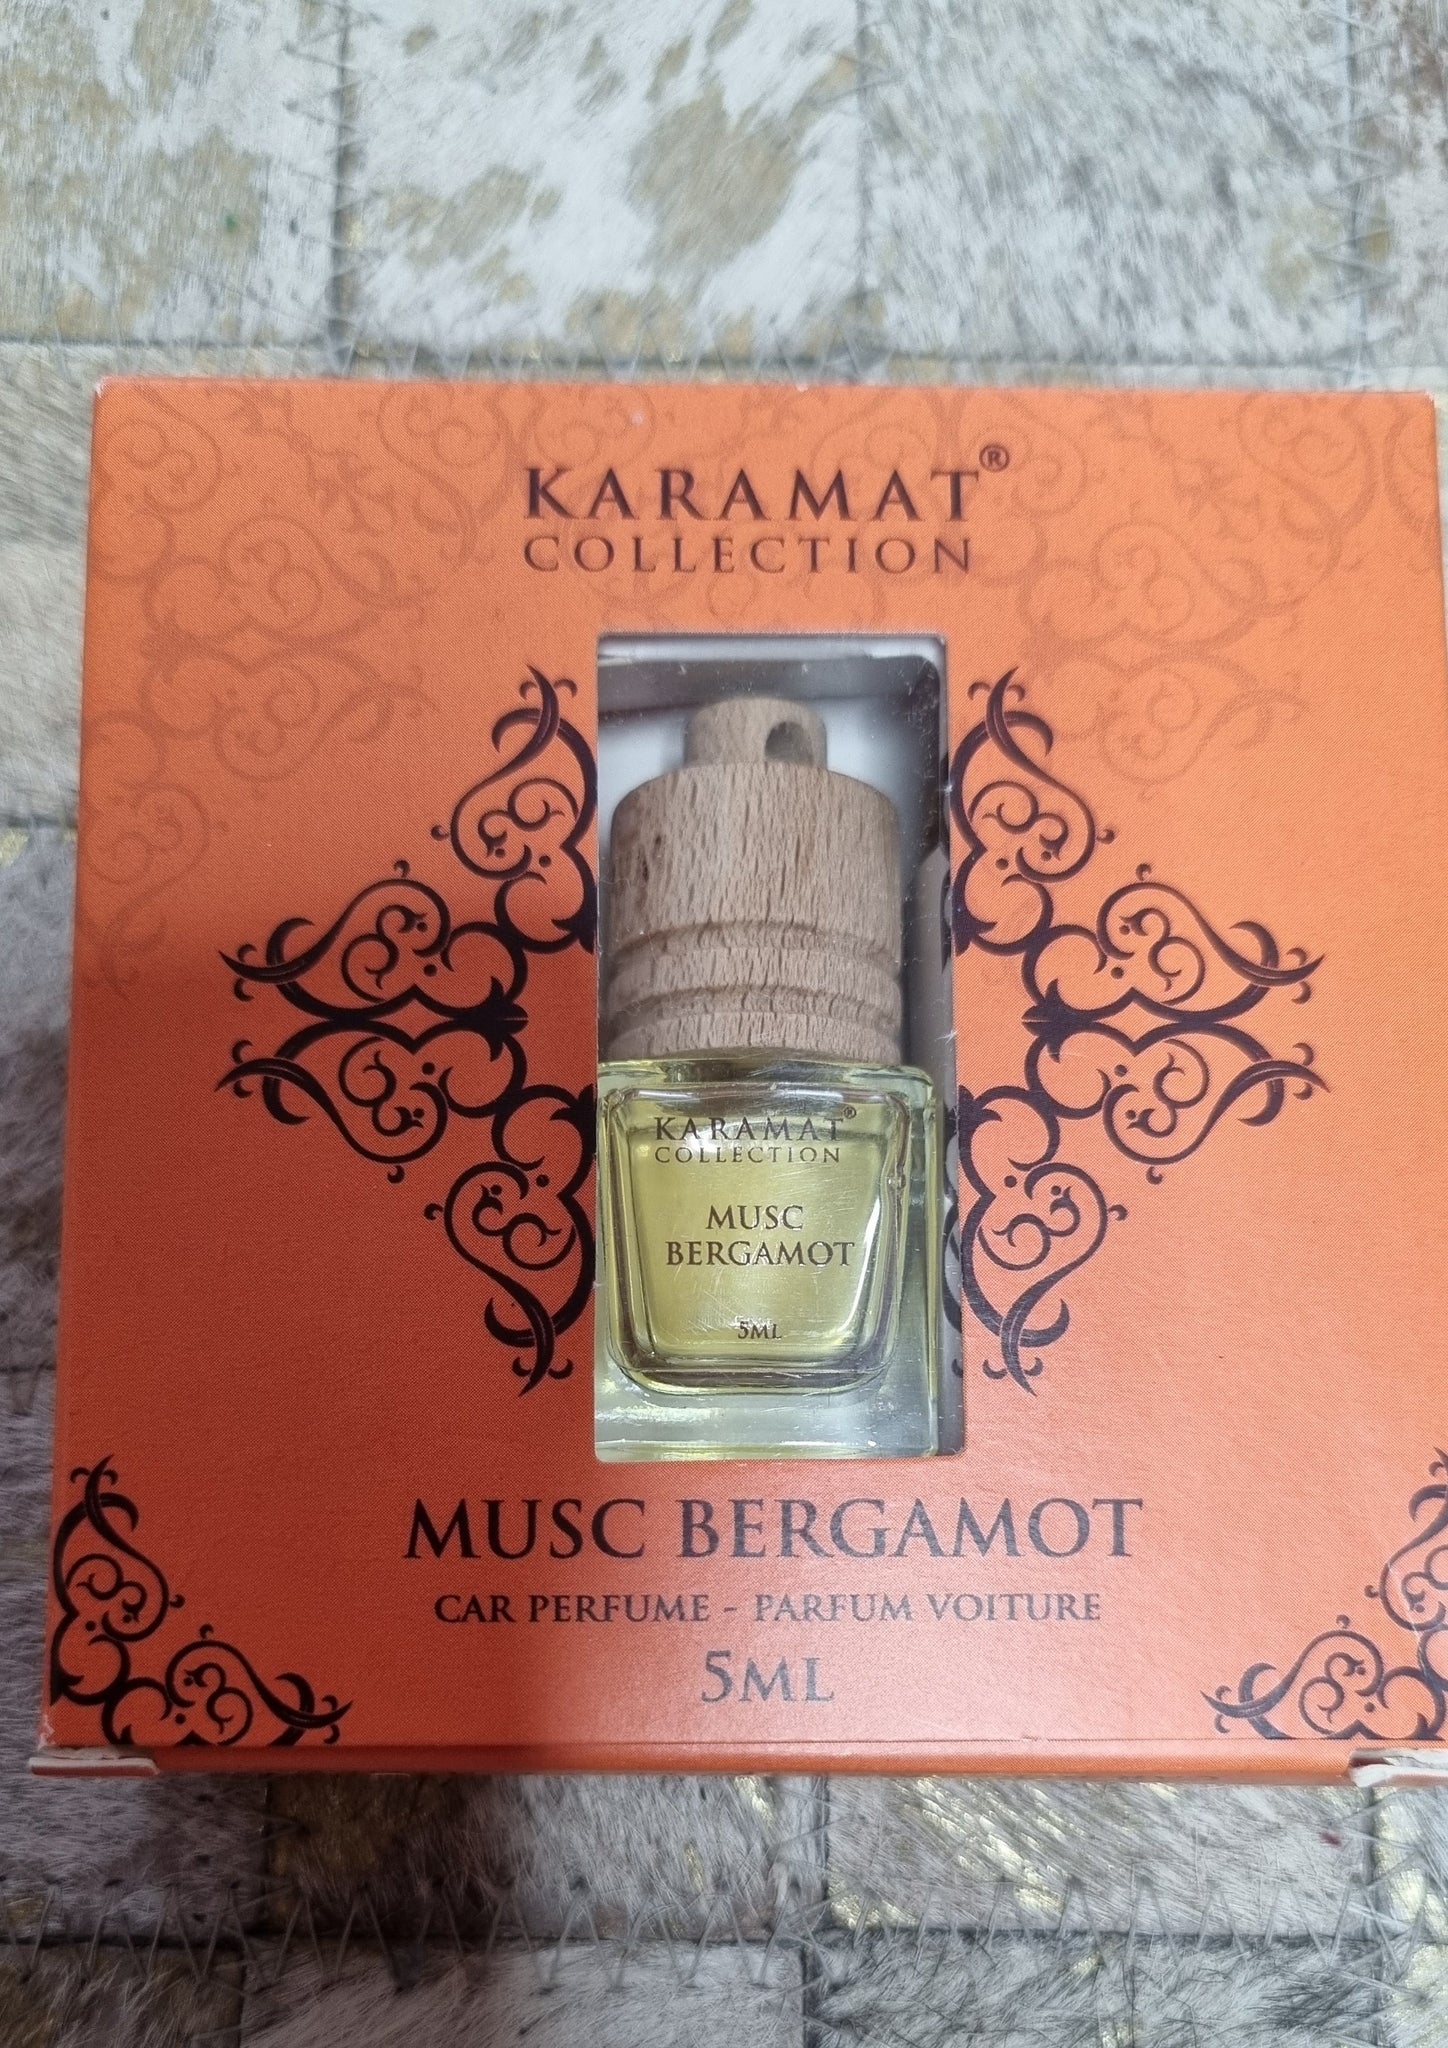 Parfum Voiture Bouquet 5ml - Karamat Collection 